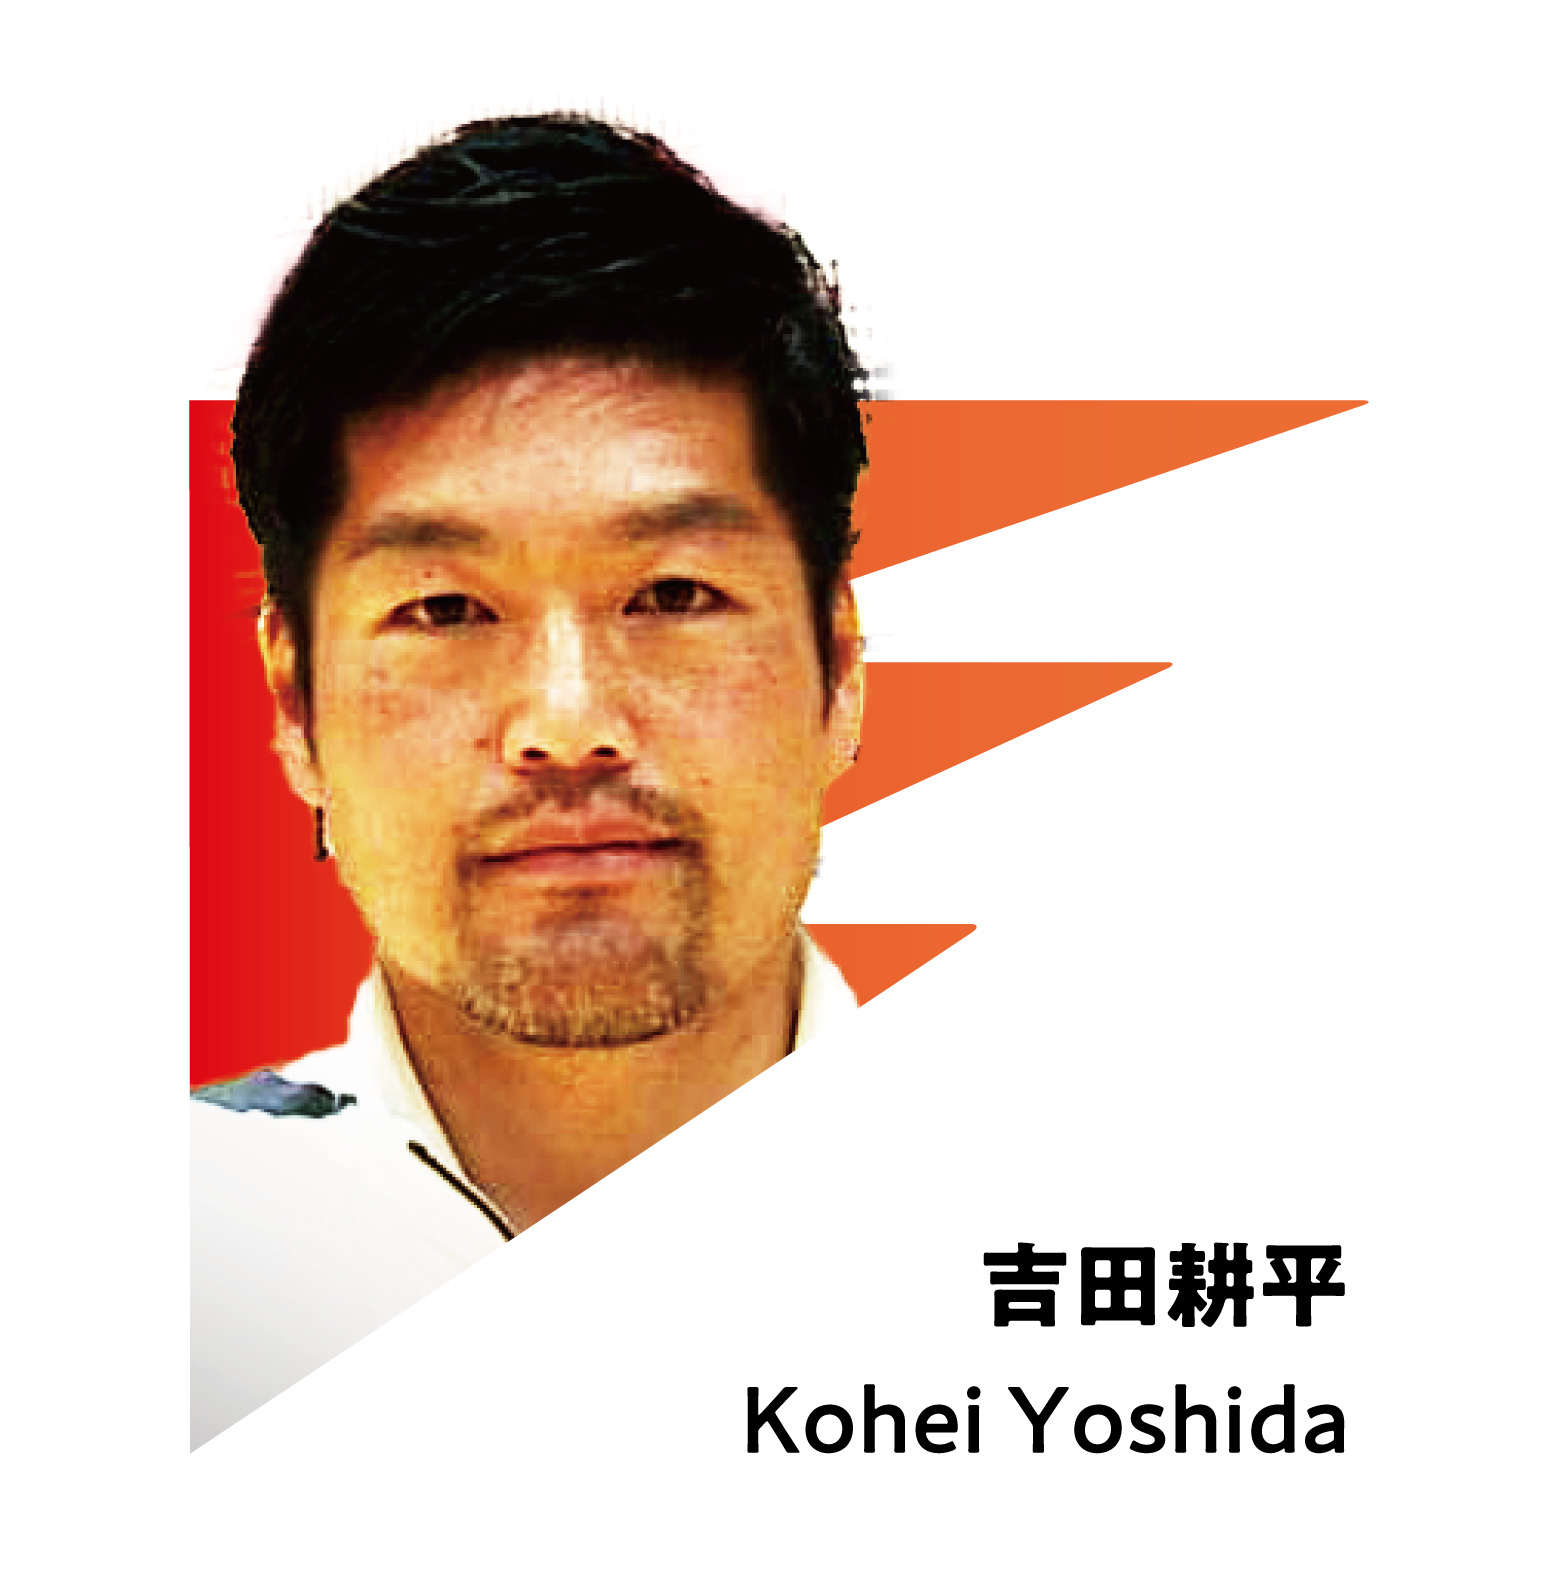 KOHEI YOSHIDA